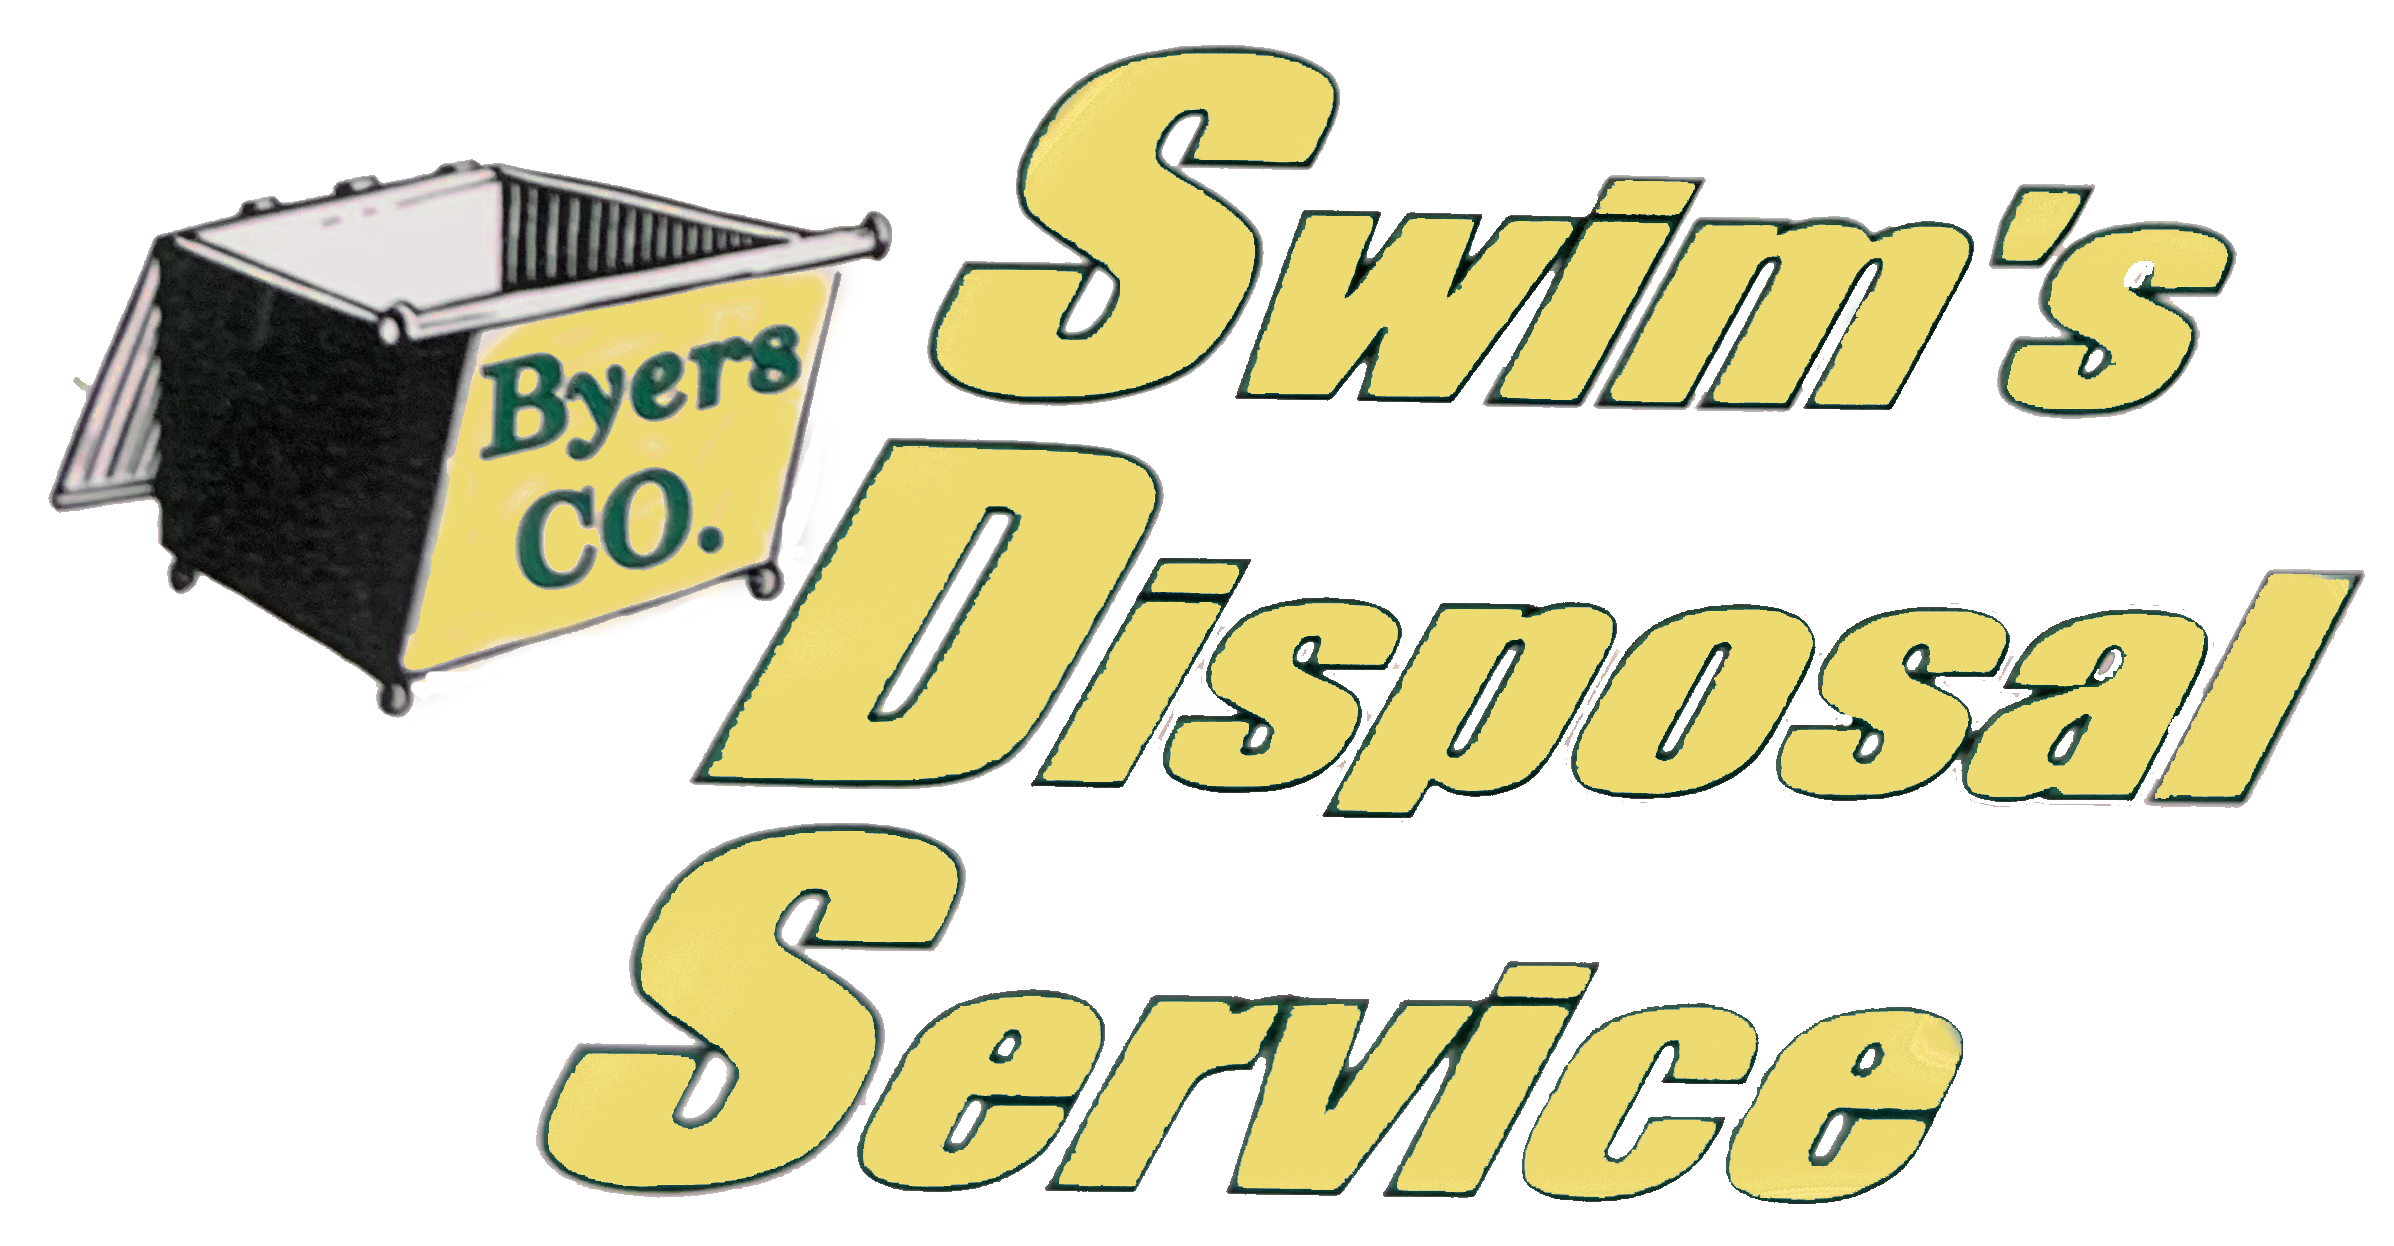 Swim’s Trash Disposal – Serving Byers, Colorado